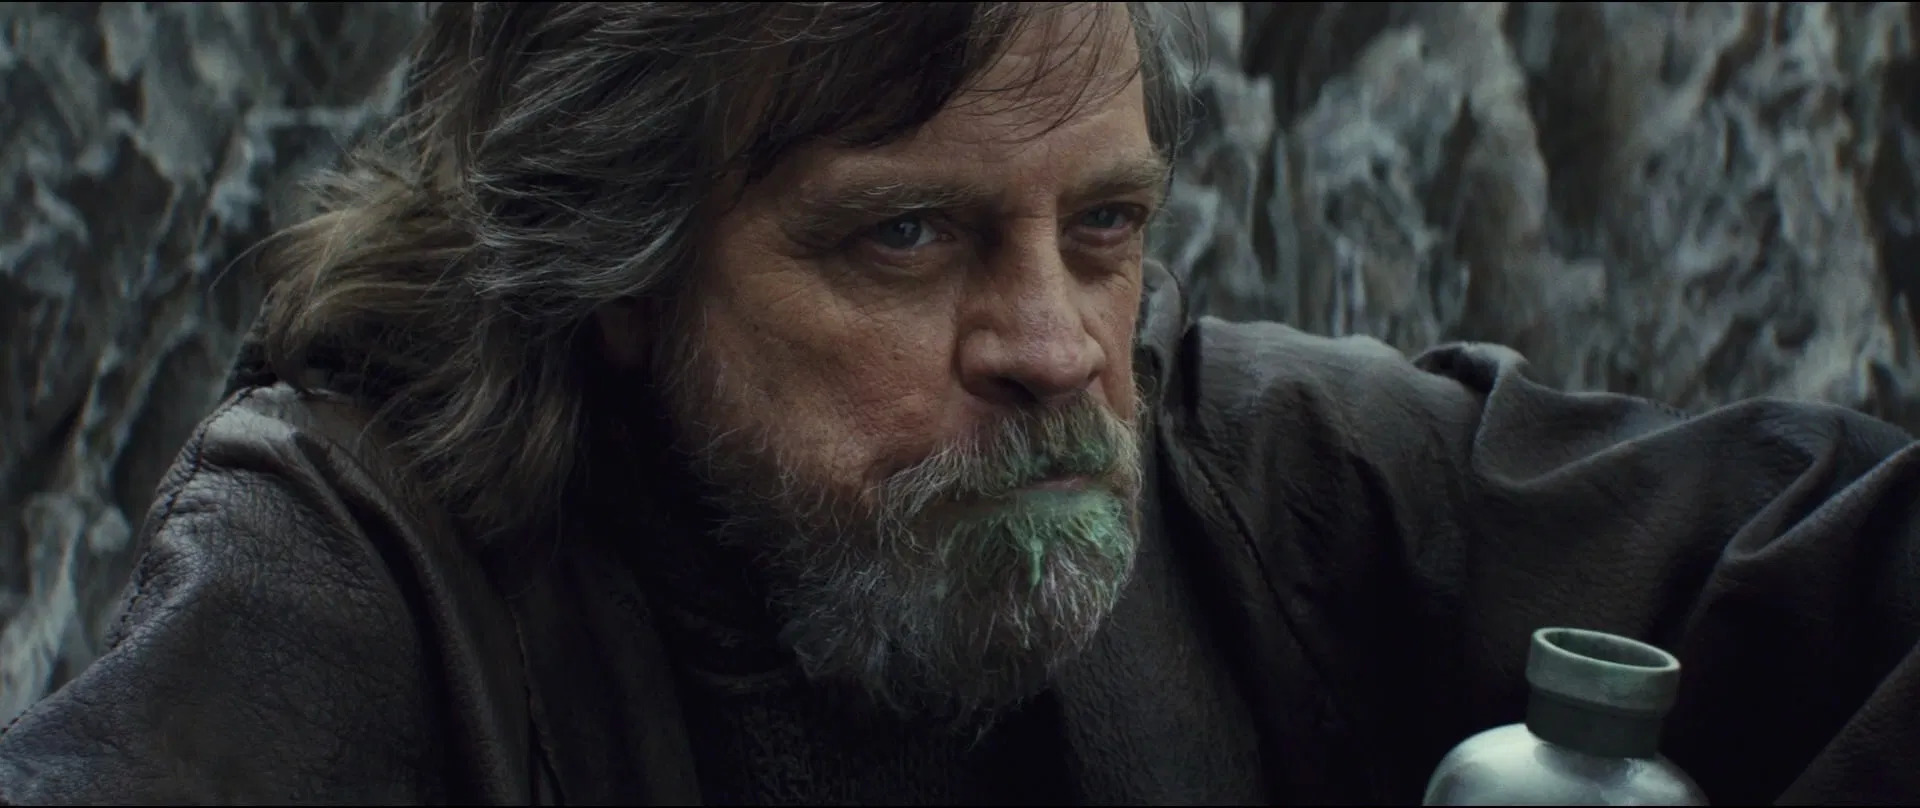 Grumpy old Luke Skywalker in The Last Jedi drinking milk fresh from the...whatever it is.